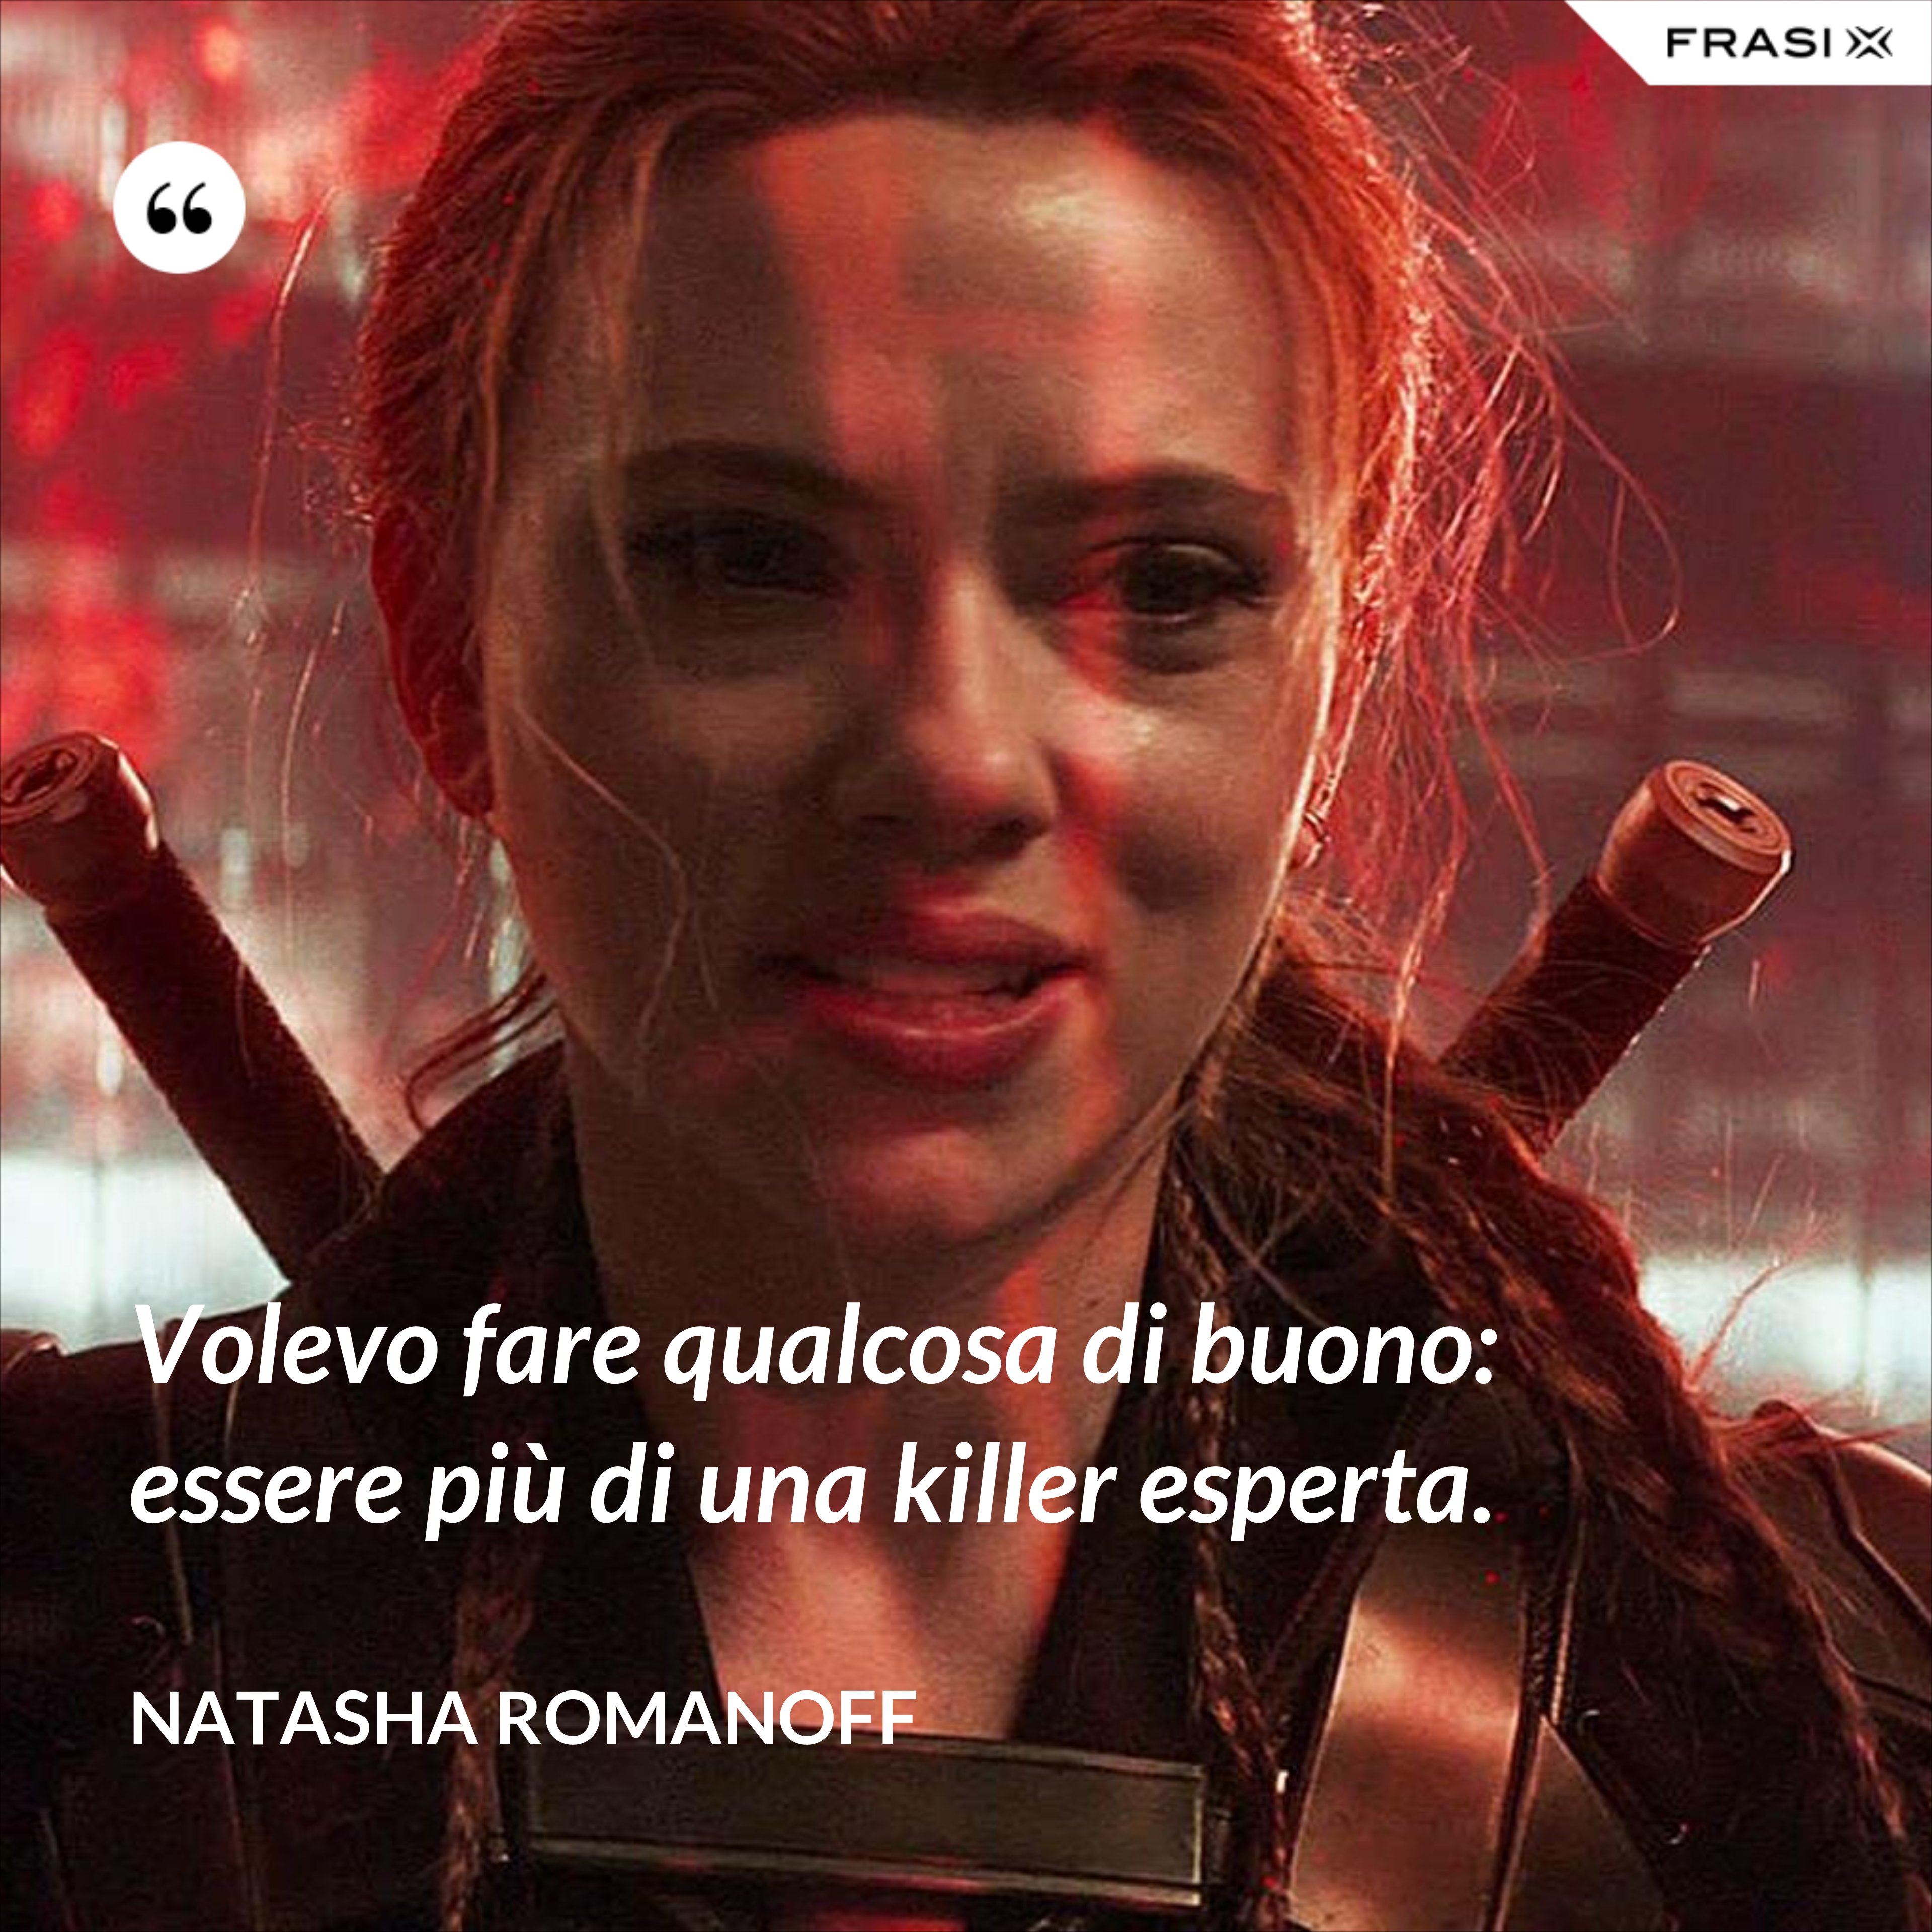 Volevo fare qualcosa di buono: essere più di una killer esperta. - Natasha Romanoff